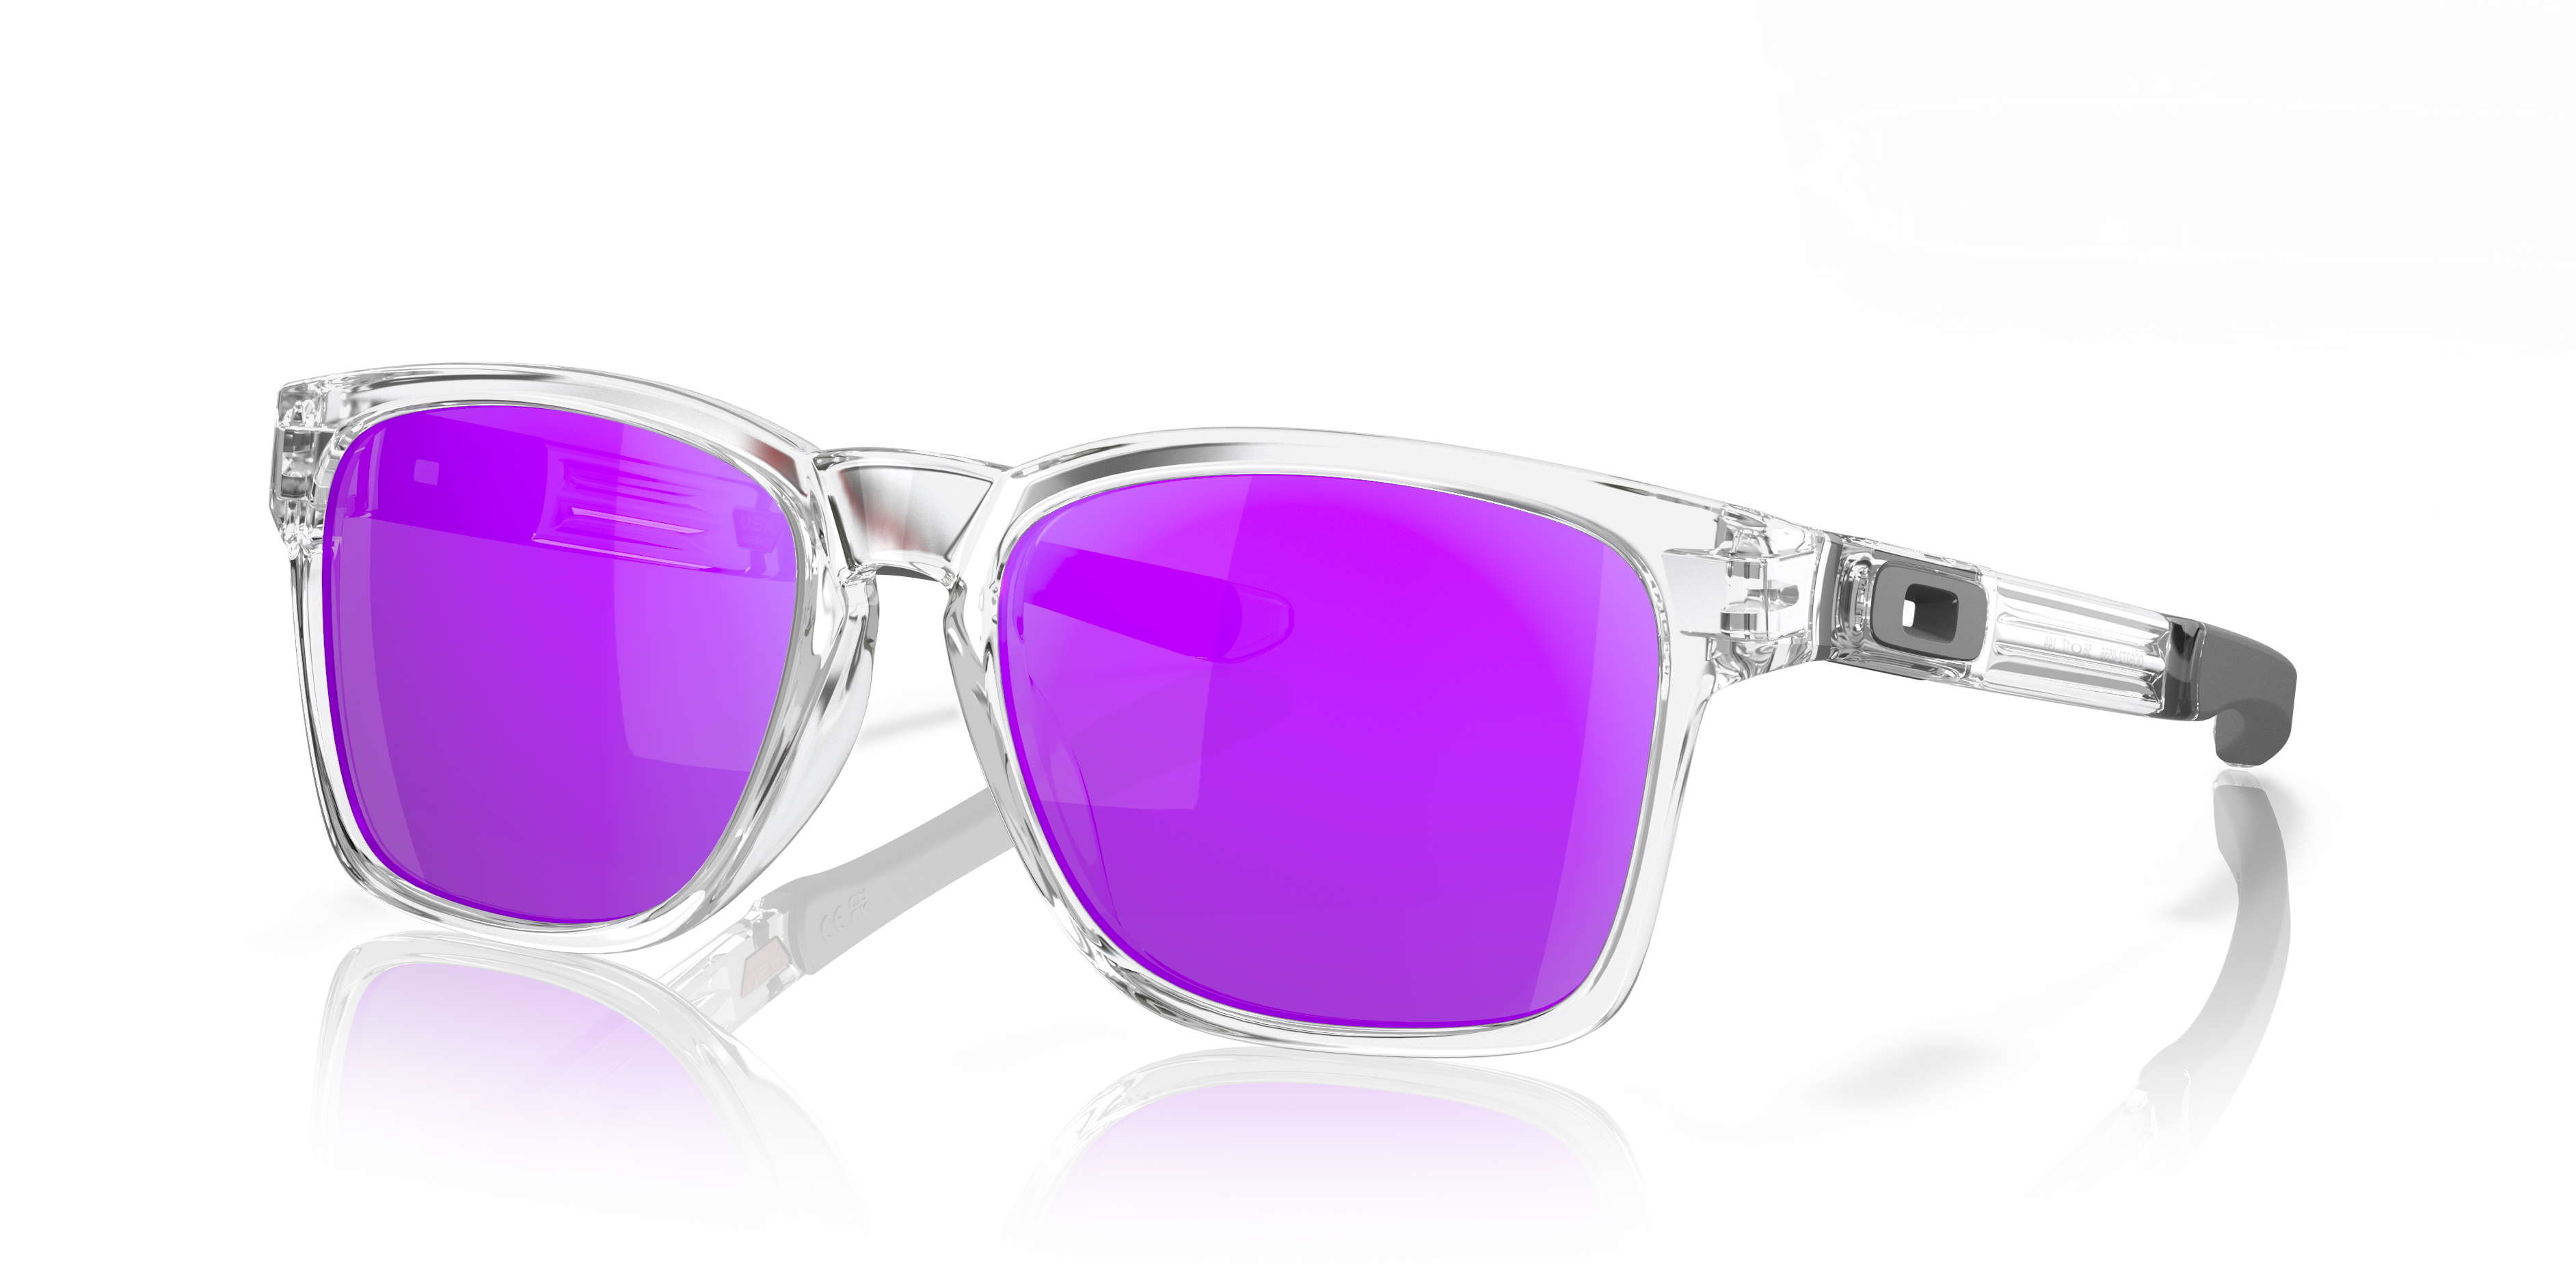 Transparent Frame Glasses |Transparent glasses for men, Women| Transparent  Eyeglasses